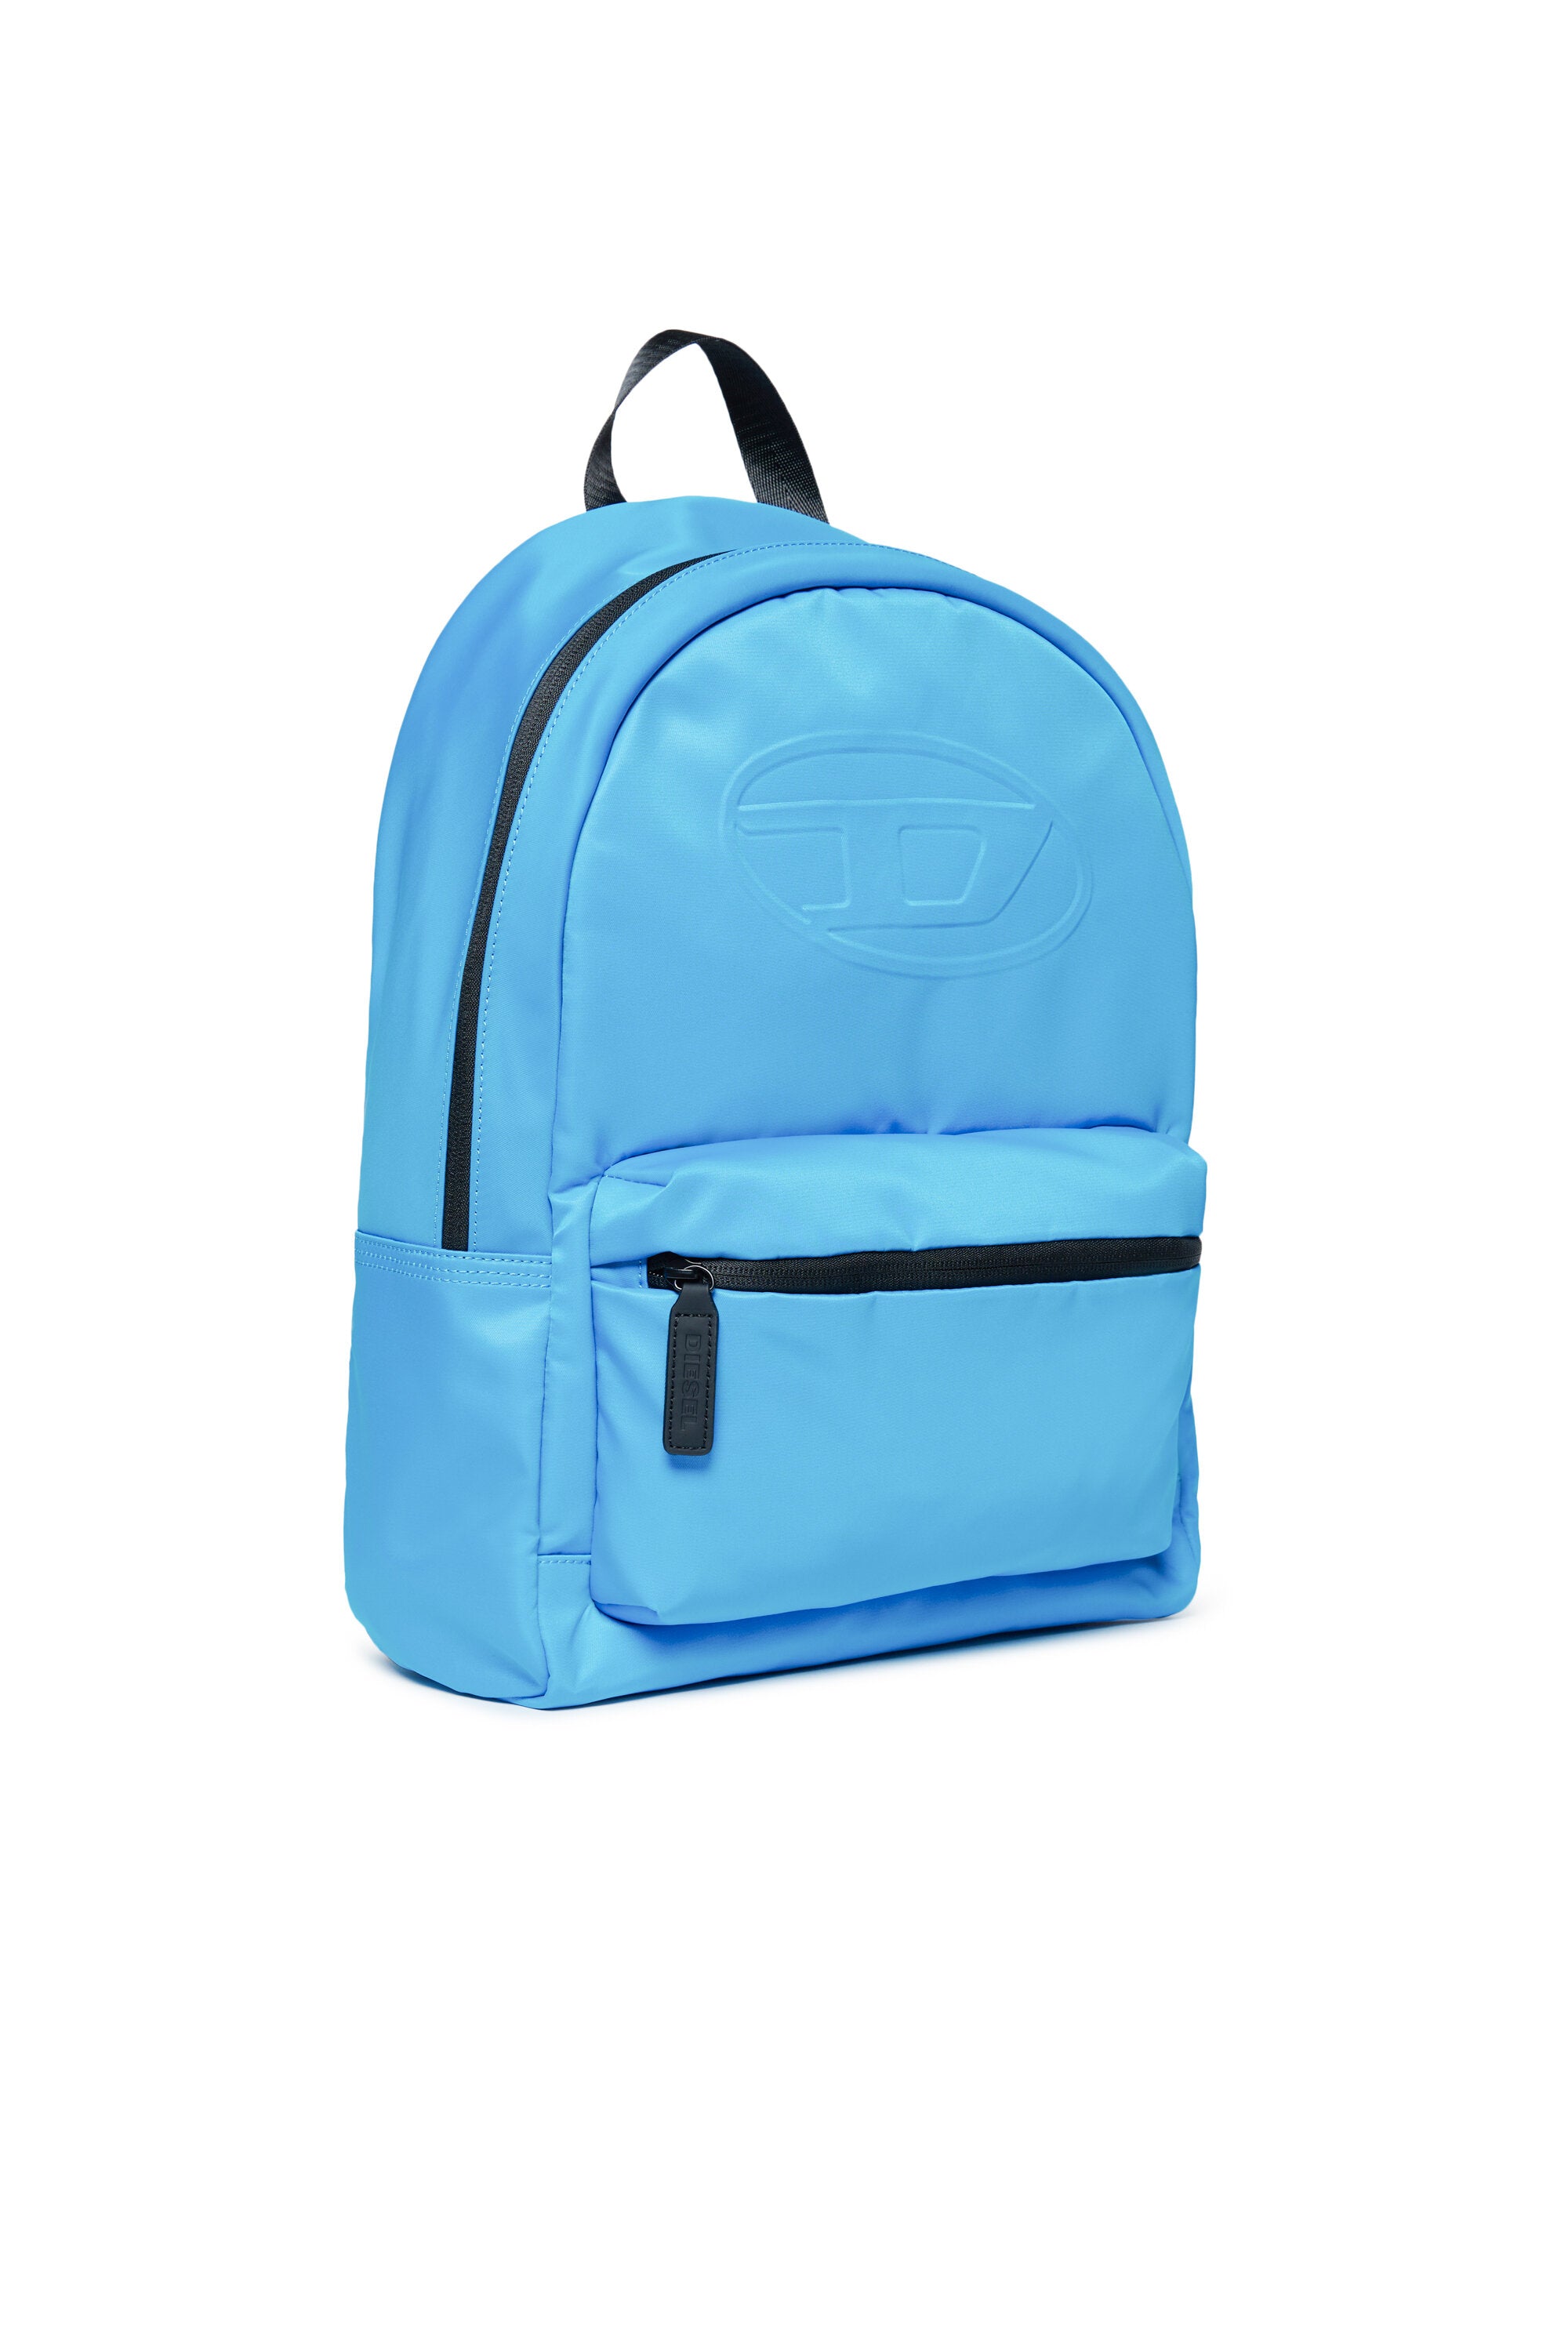 Oval D branded backpack